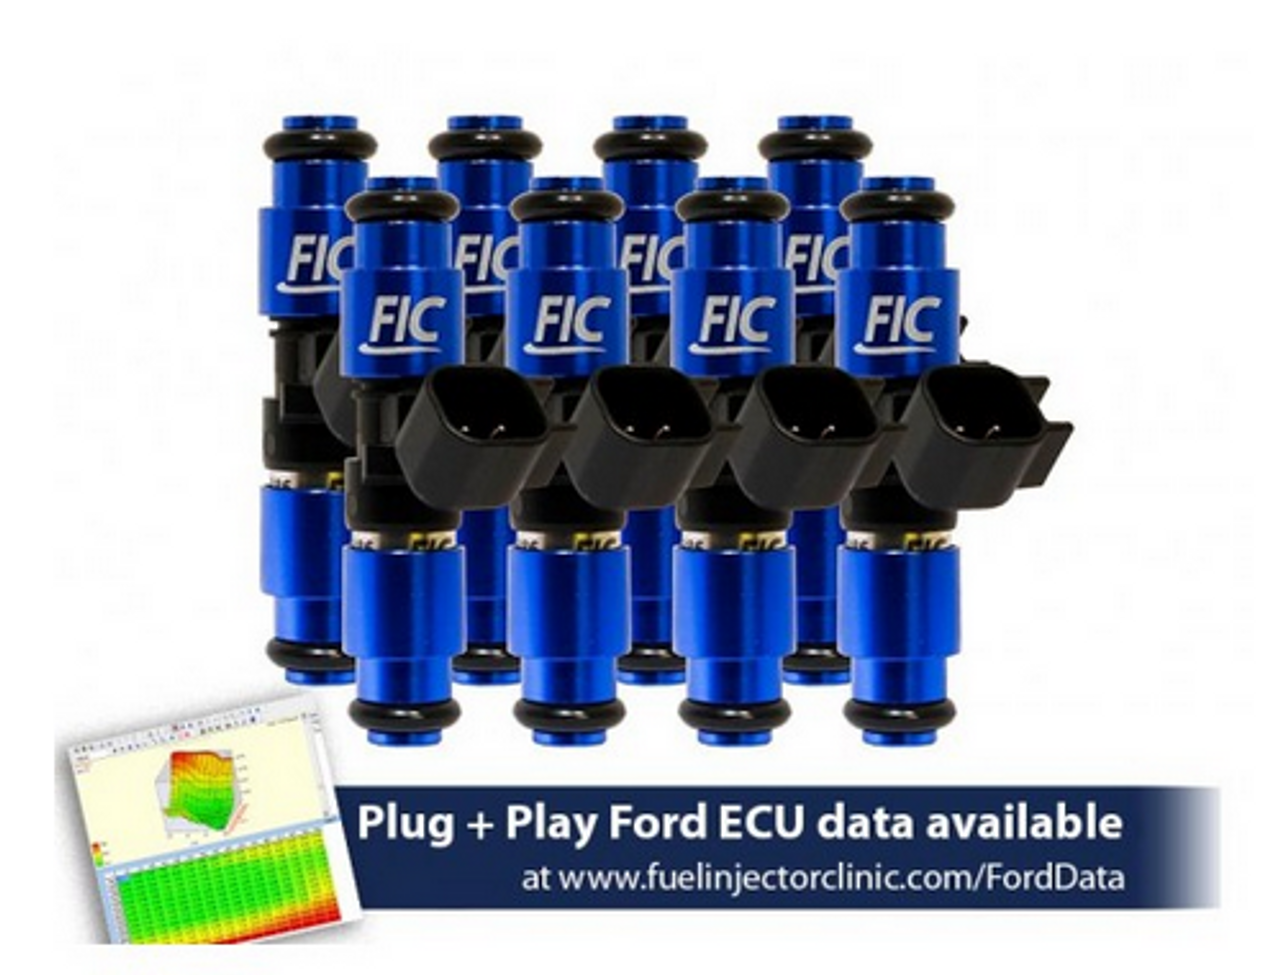 Fuel Injector Clinic 1650cc Fuel Injectors - 2015+ Mustang GT / GT350 / GT500